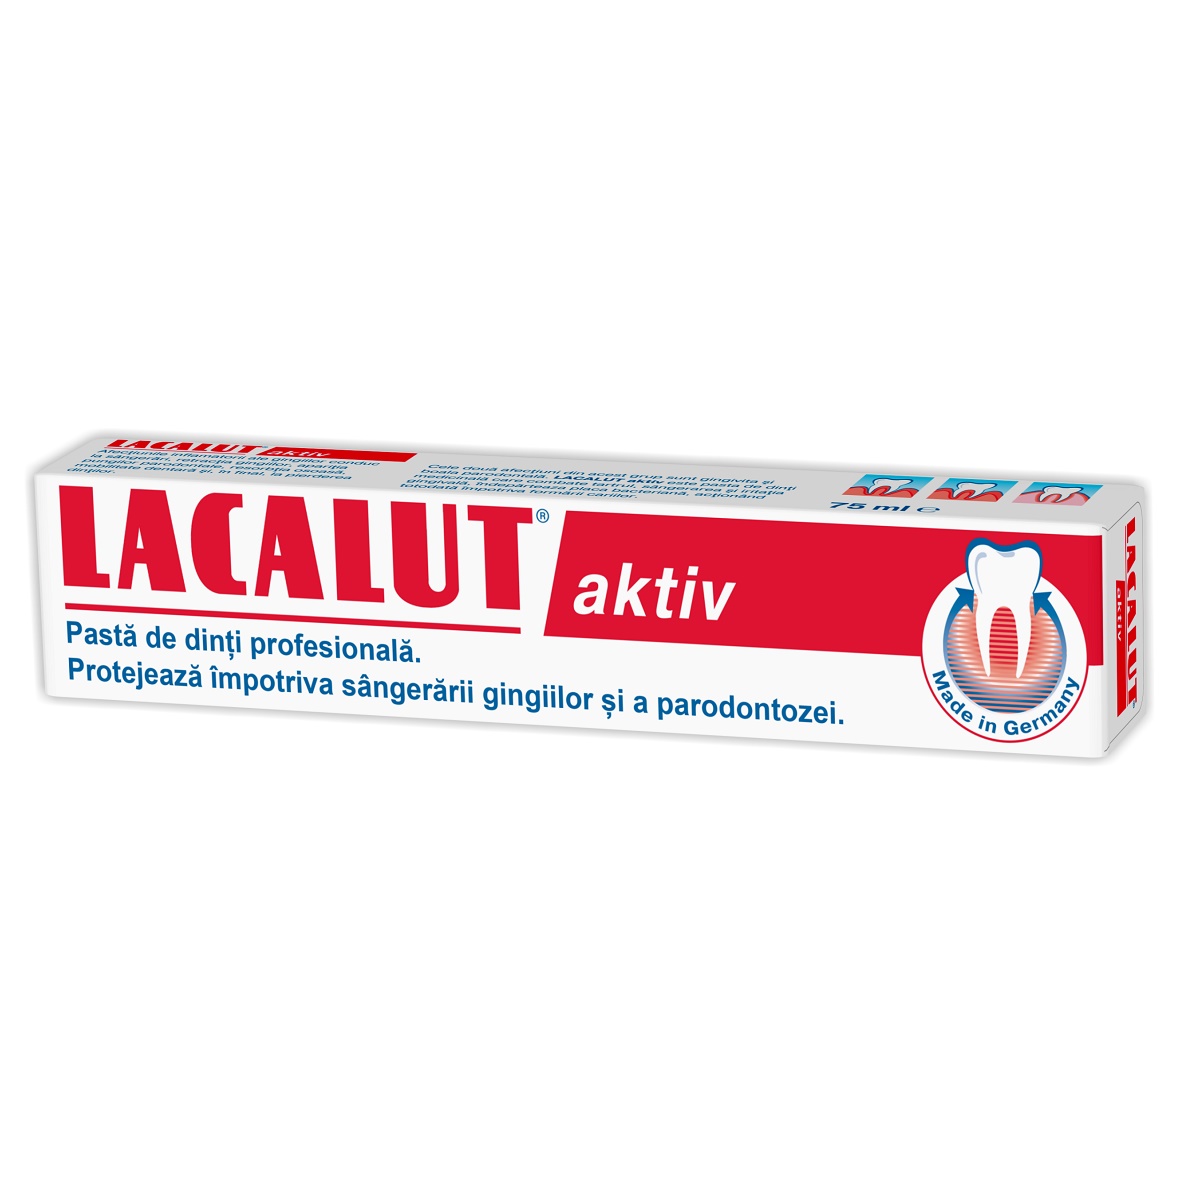 Pasta de dinti - Pastă de dinți medicinala Lacalut Aktiv, 75 ml, Theiss Naturwaren, sinapis.ro